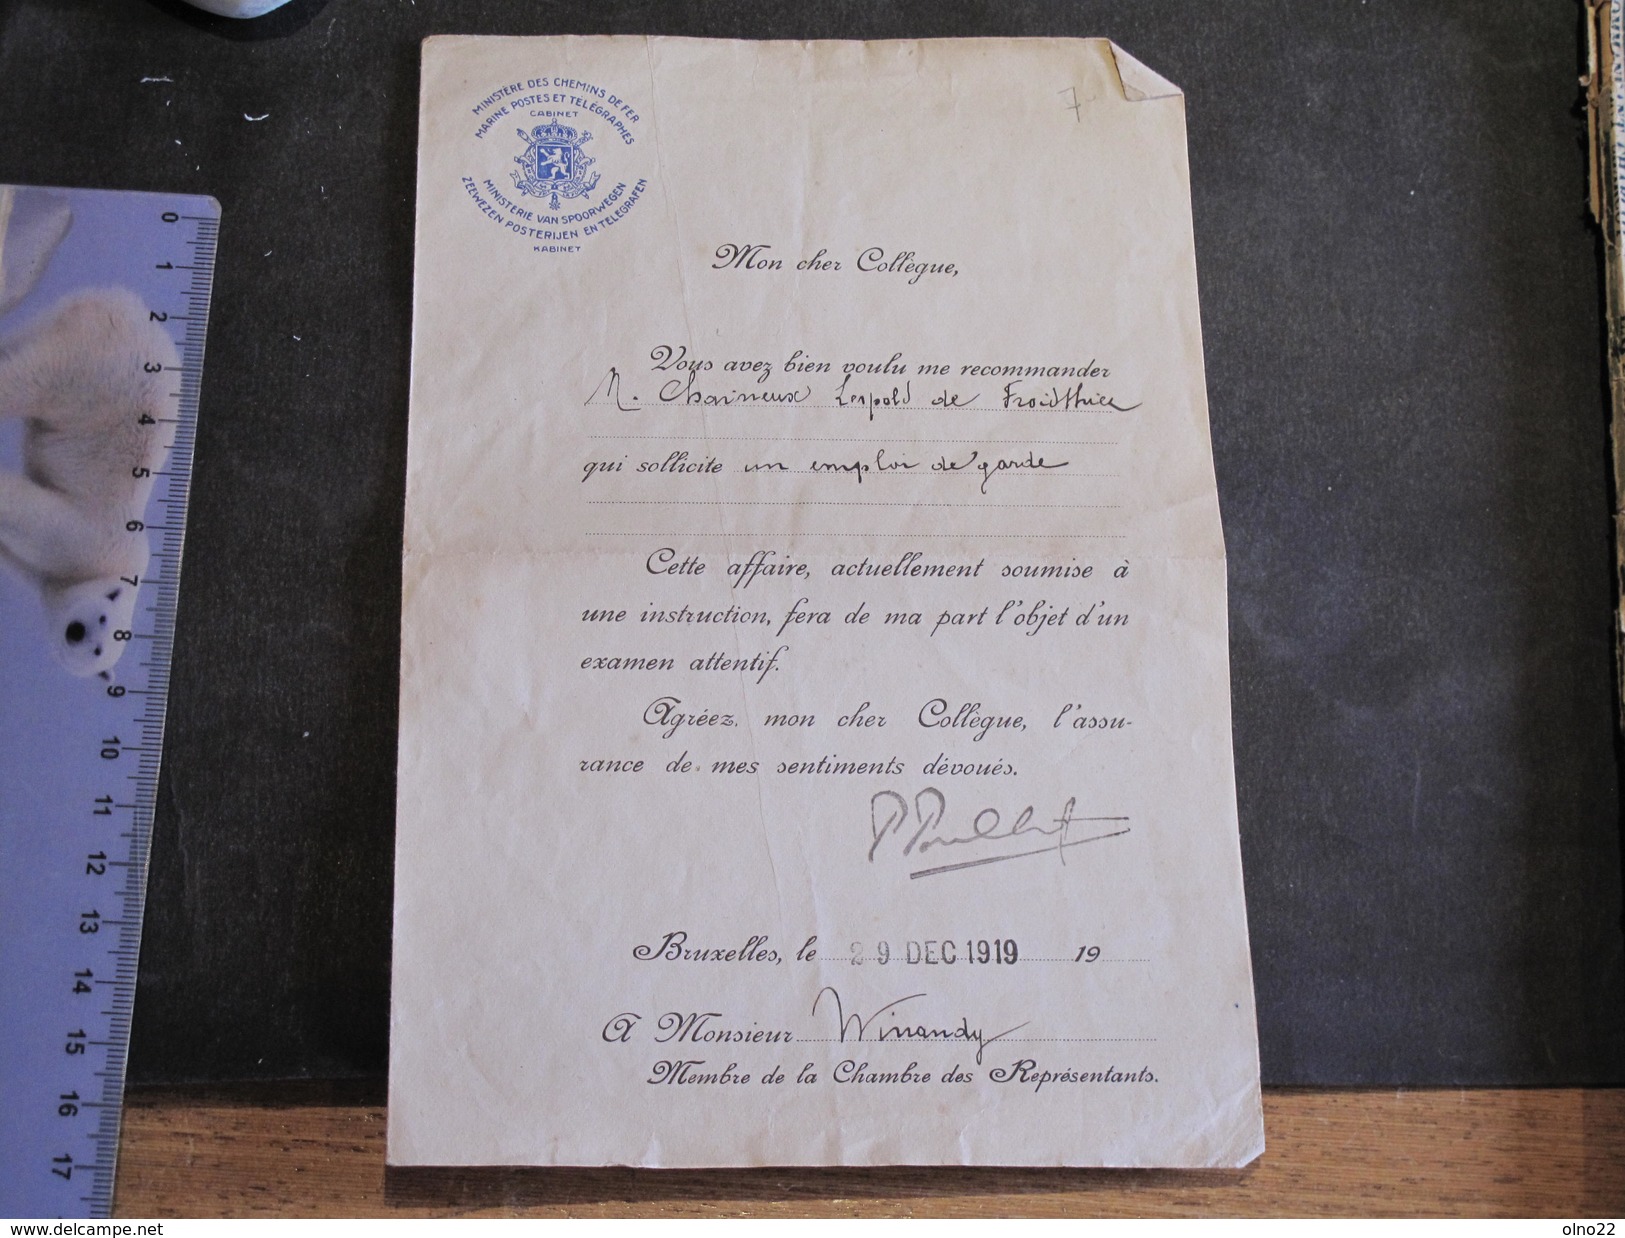 FROIDTHIER- Lettre De Recommandation De M WINANDY Relative à Un Emploi De Garde Pour CHAINEUX Léopold 29/128/19 - Manuscripten